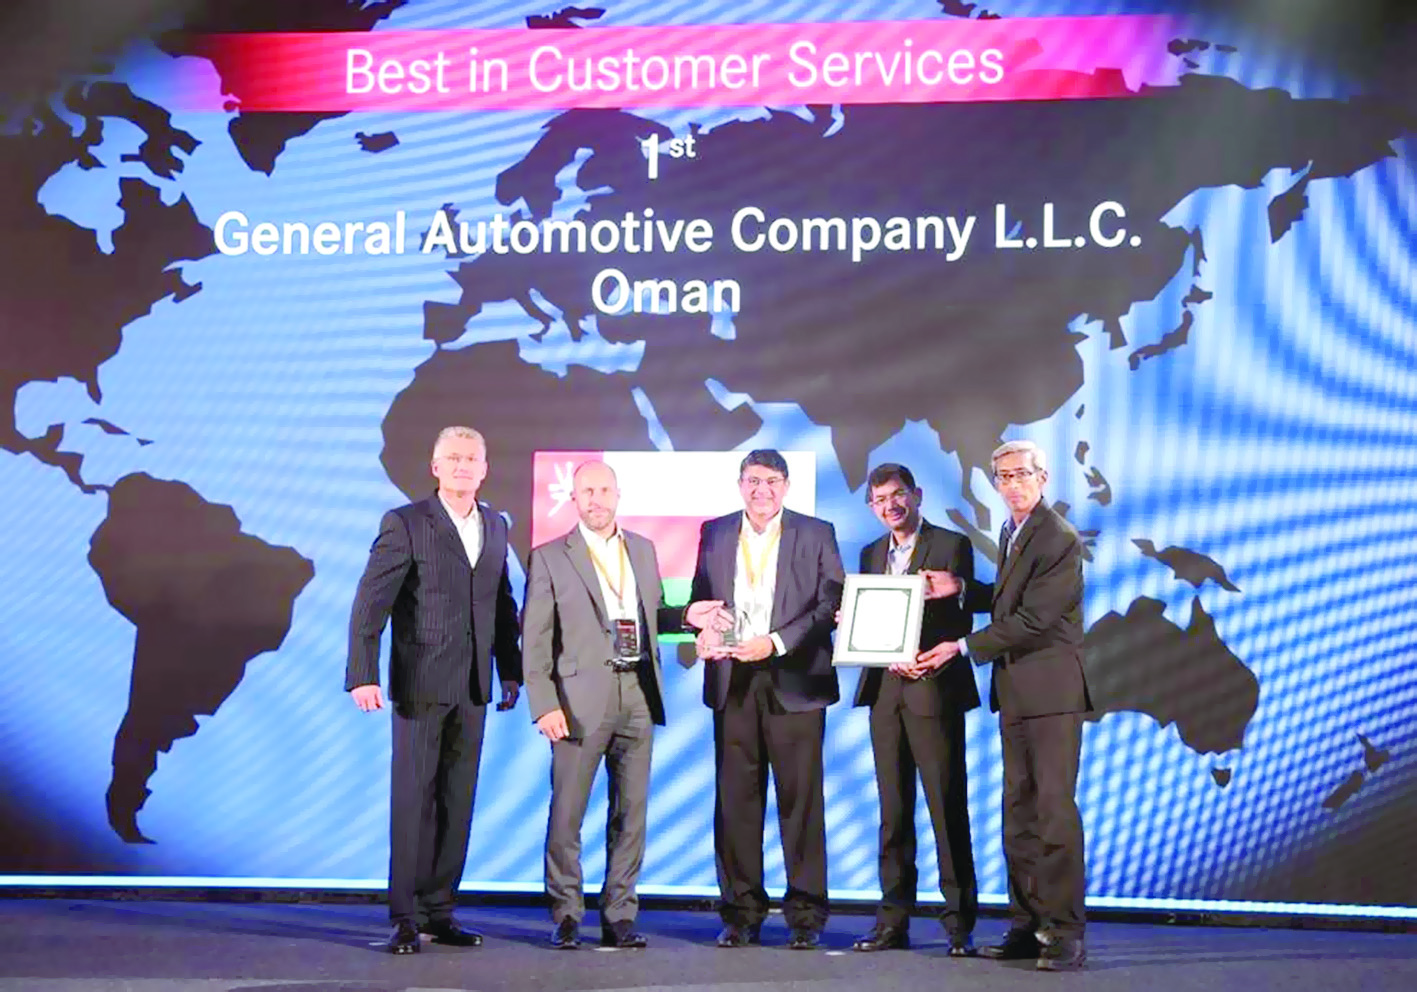 الشركة العامة للسيارات تحصد جائزة "أفضل خدمة للزبائن "